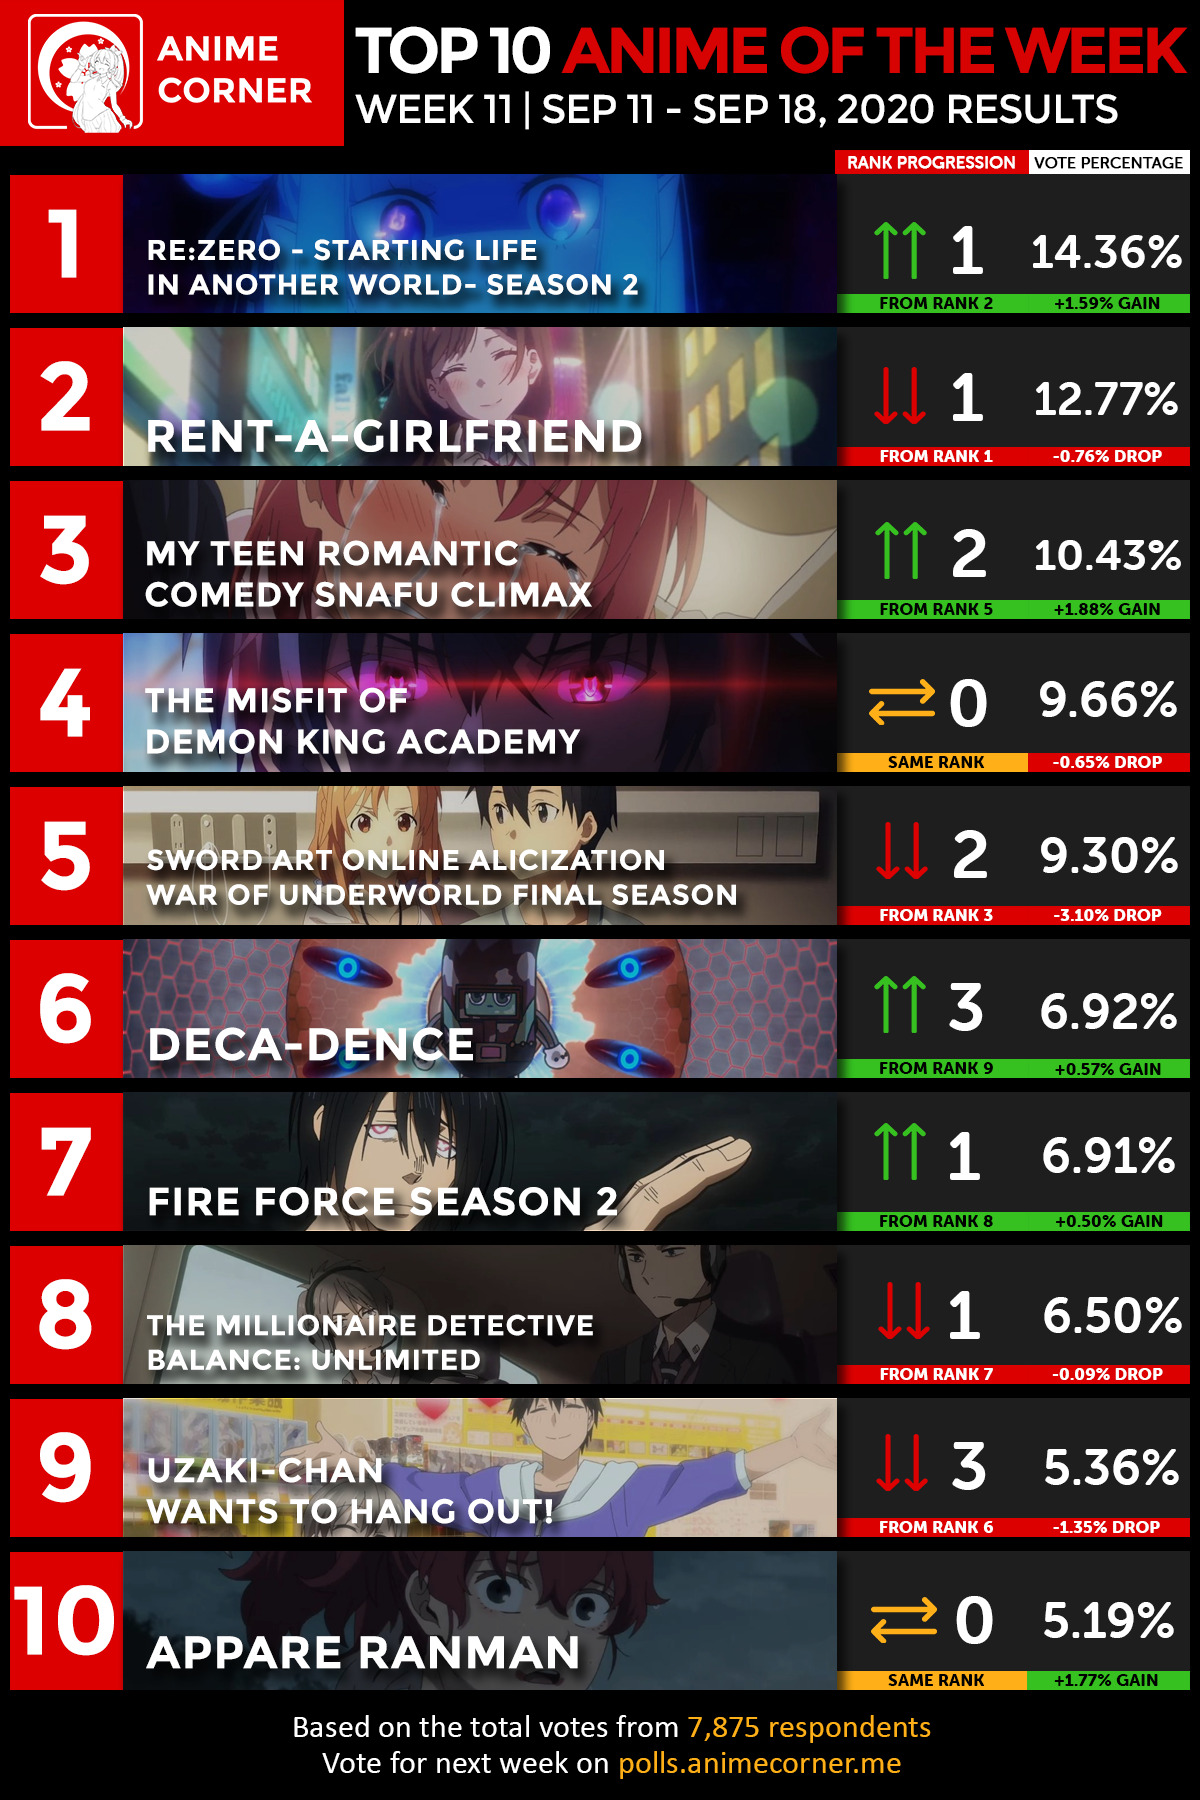 Anime Rankings - Anime Corner Week 11 results